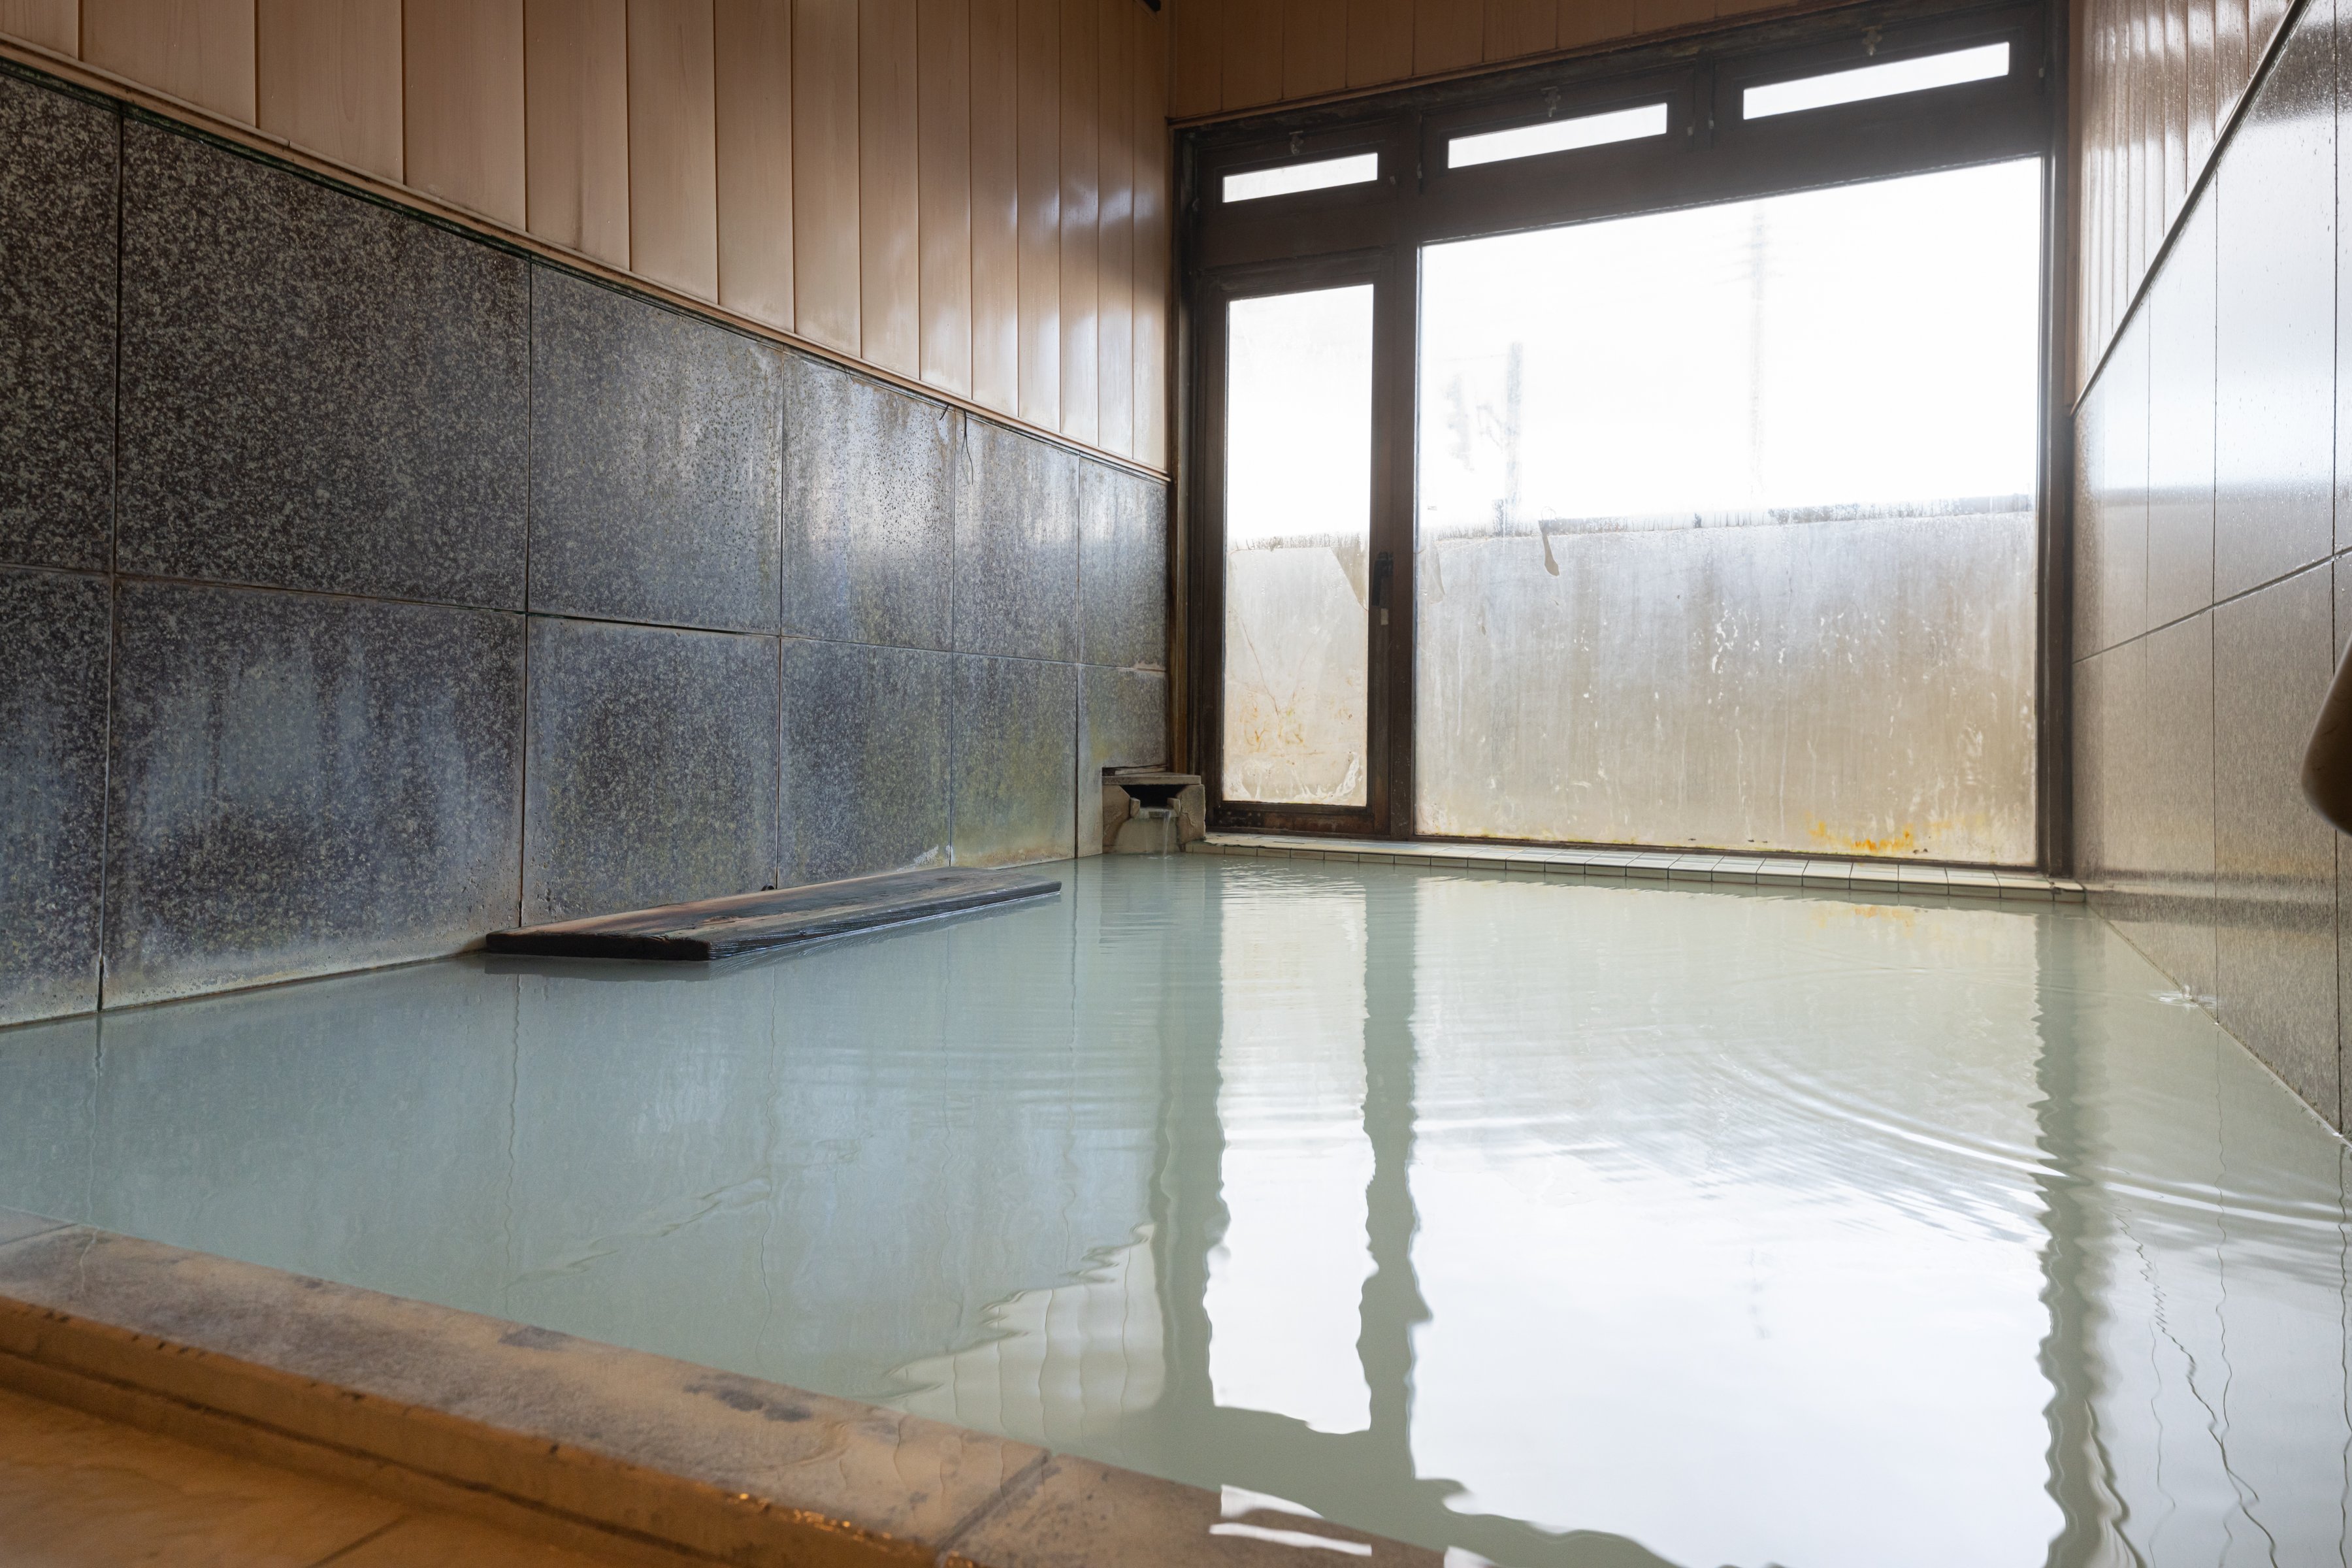 【石井宏子さんが選ぶ 私の極上温泉】下風呂温泉 ホテルニュー下風呂